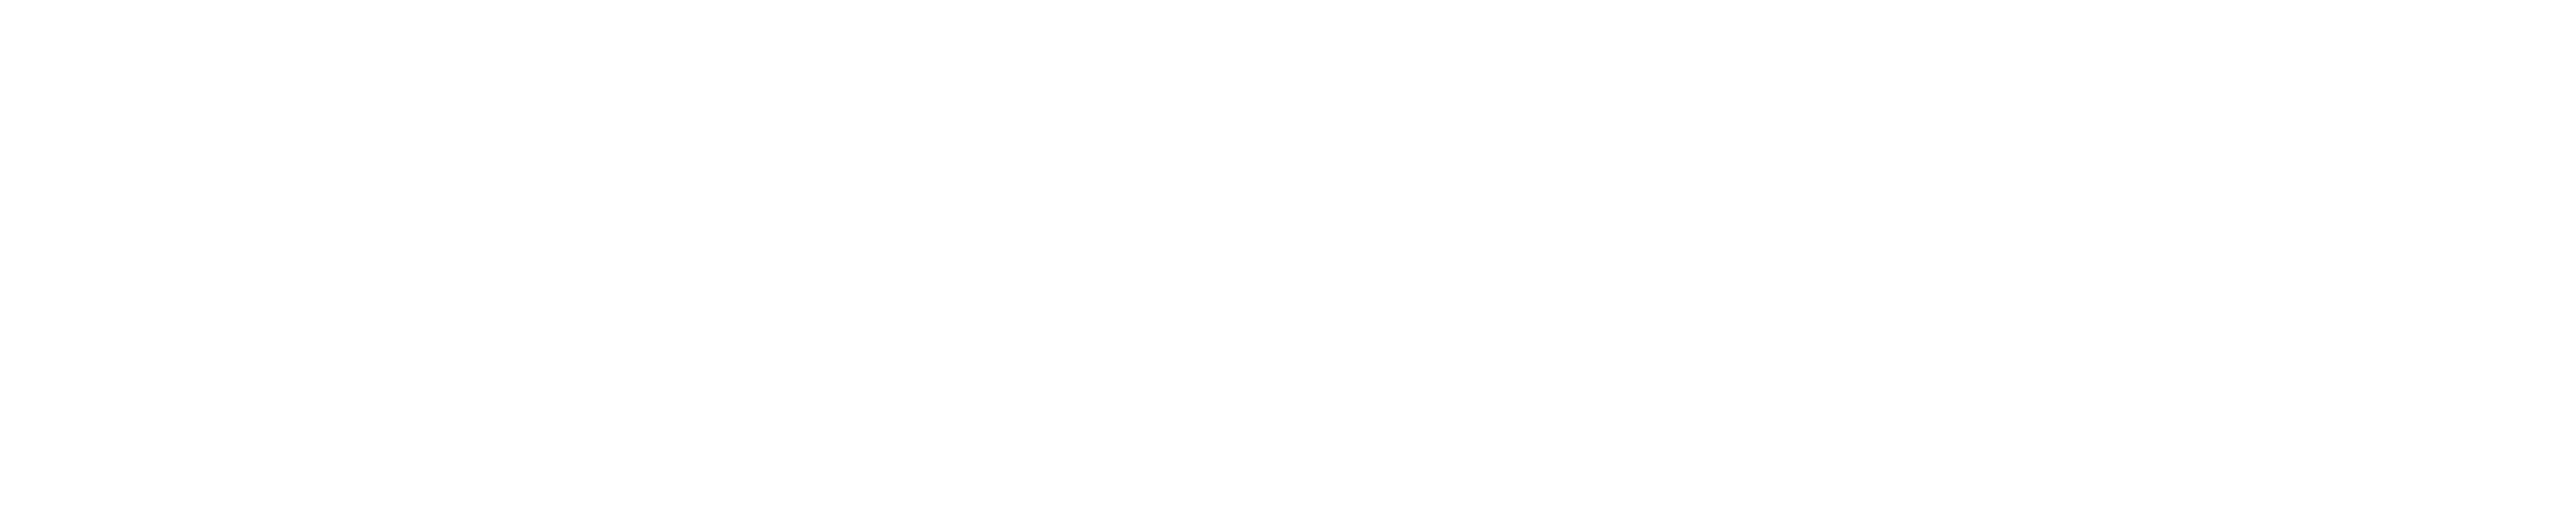 krohn breakthrough foundation logo white